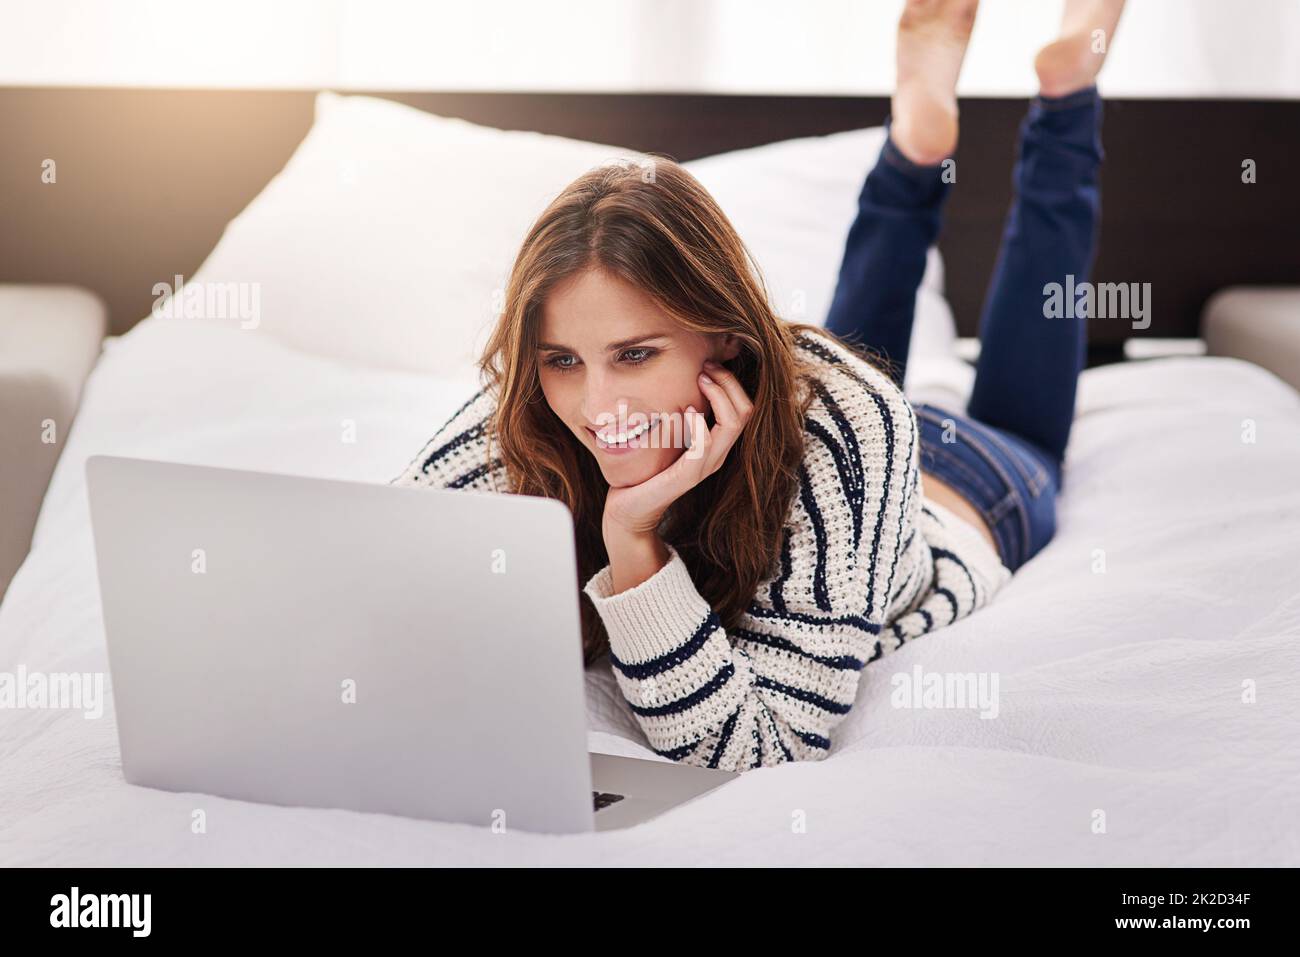 Ama passare il suo tempo libero online. Scatto di una bella giovane donna che naviga su un notebook a casa. Foto Stock